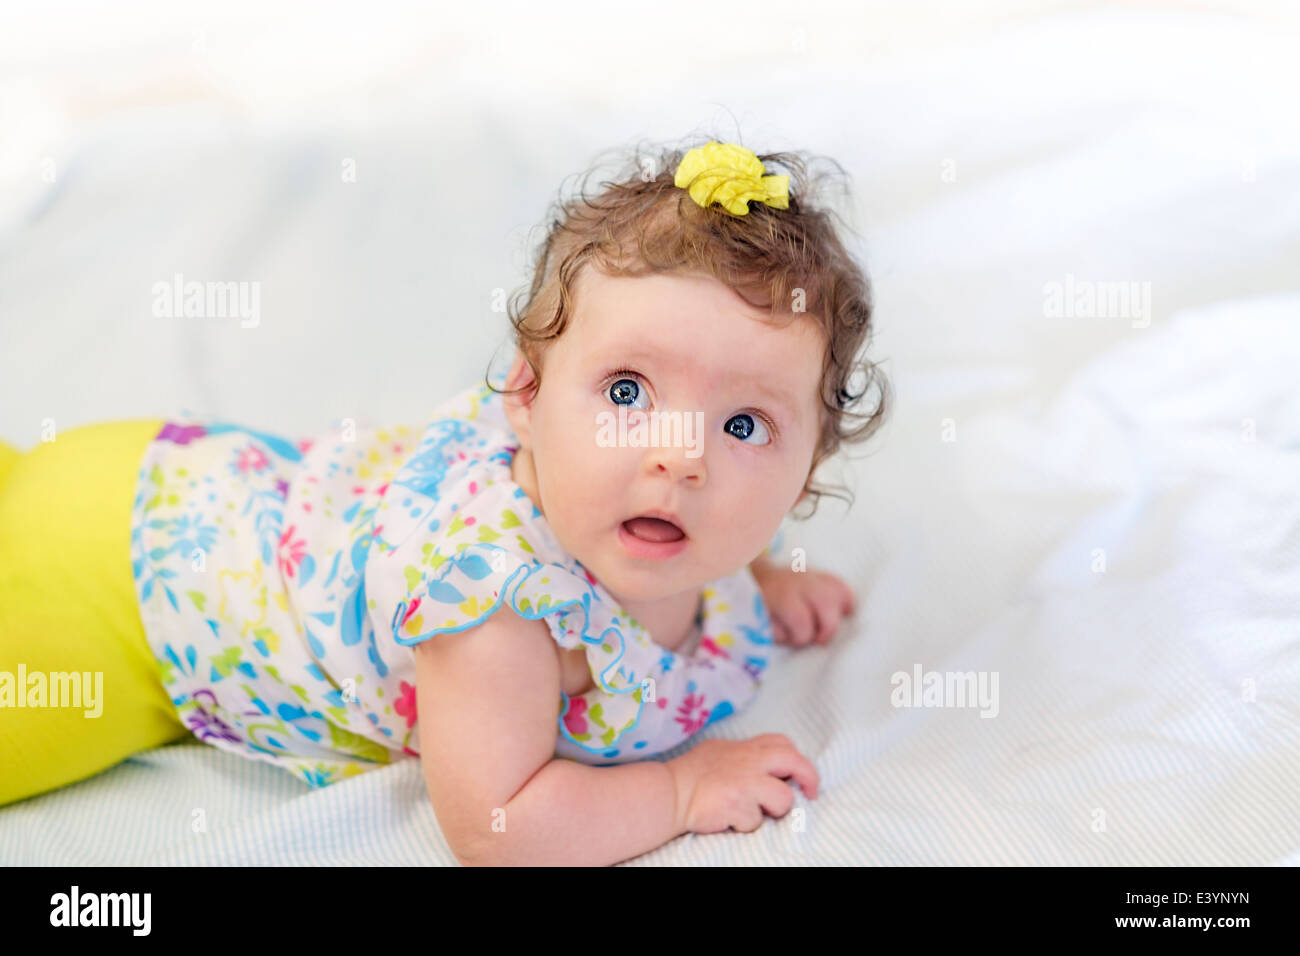 Bebé con el pelo rizado foto de archivo. Imagen de alegre - 58792780